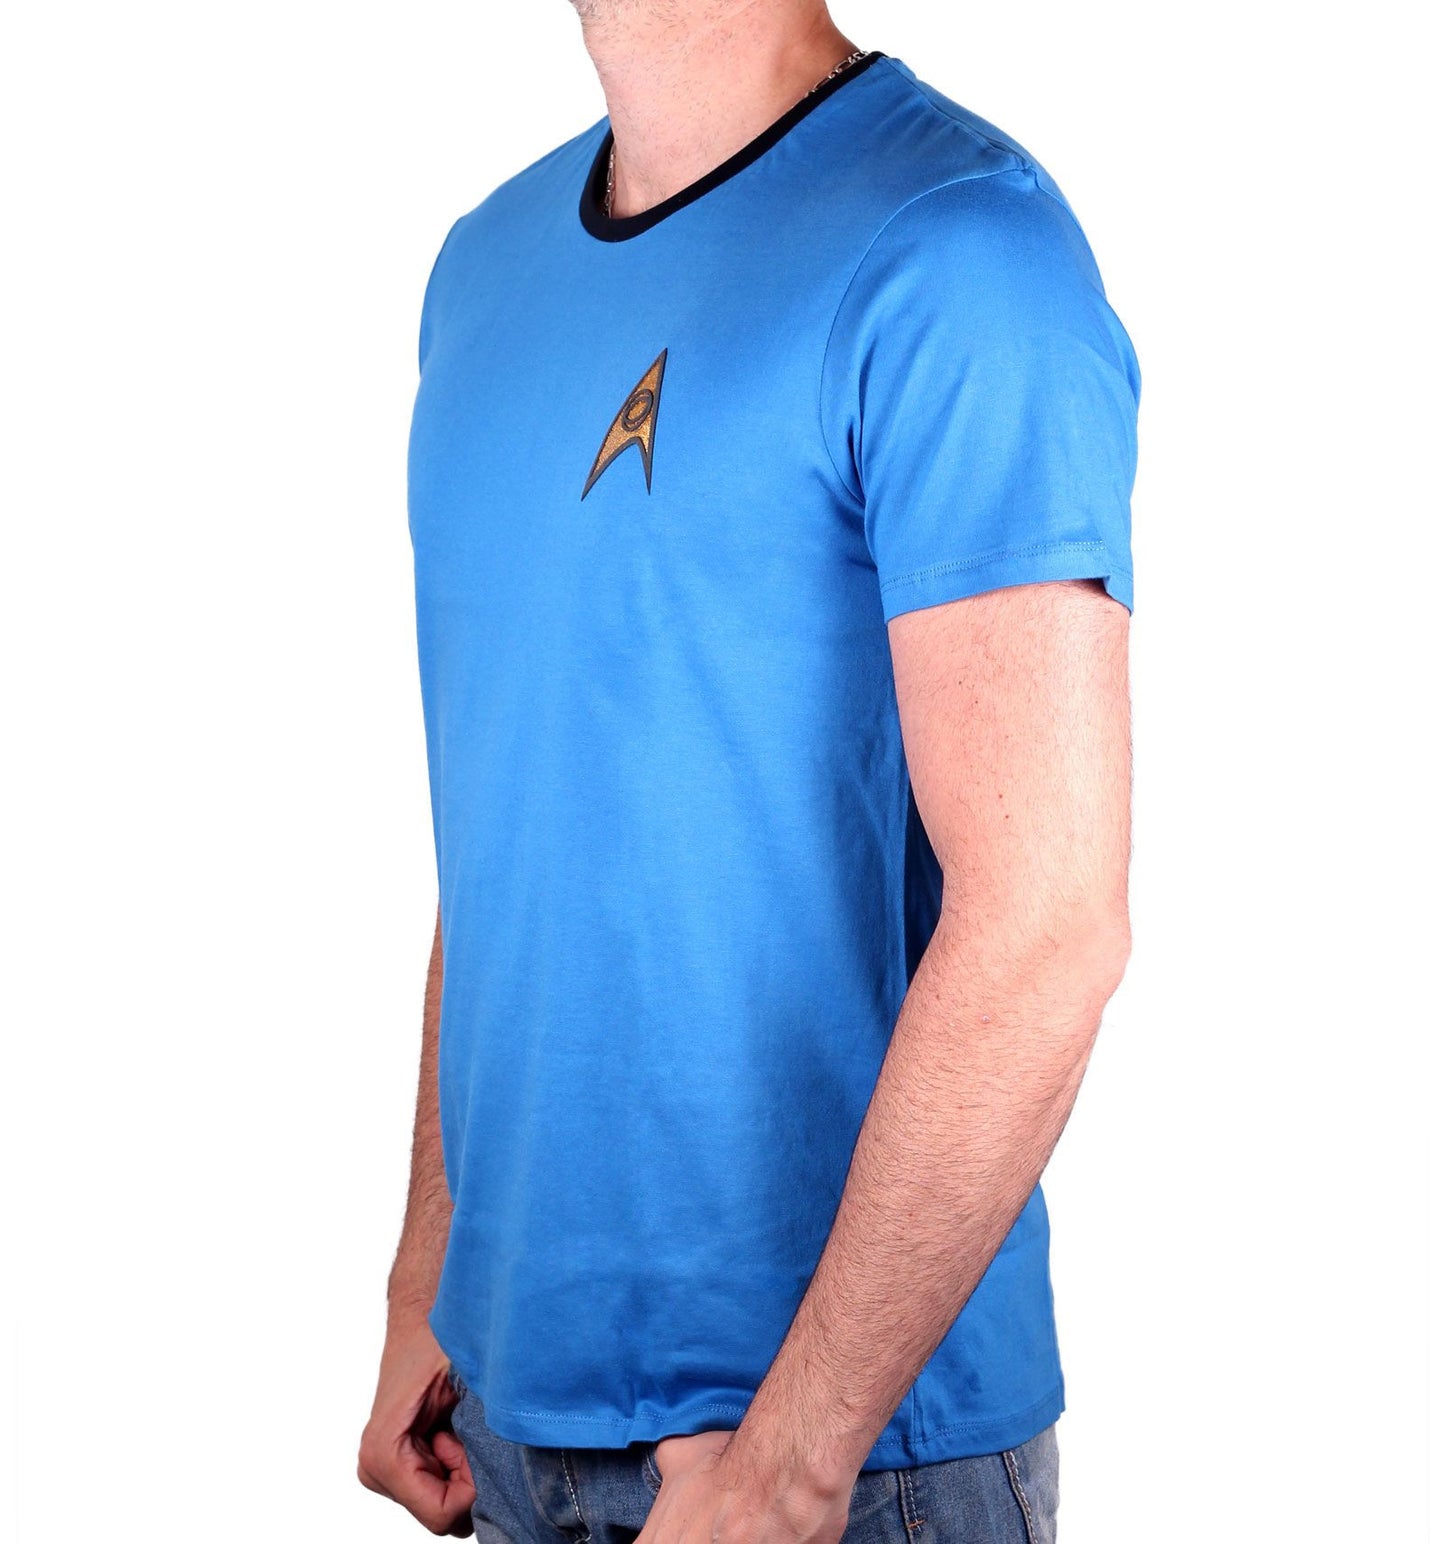 Star Trek T-shirt - Blue Spock Costume